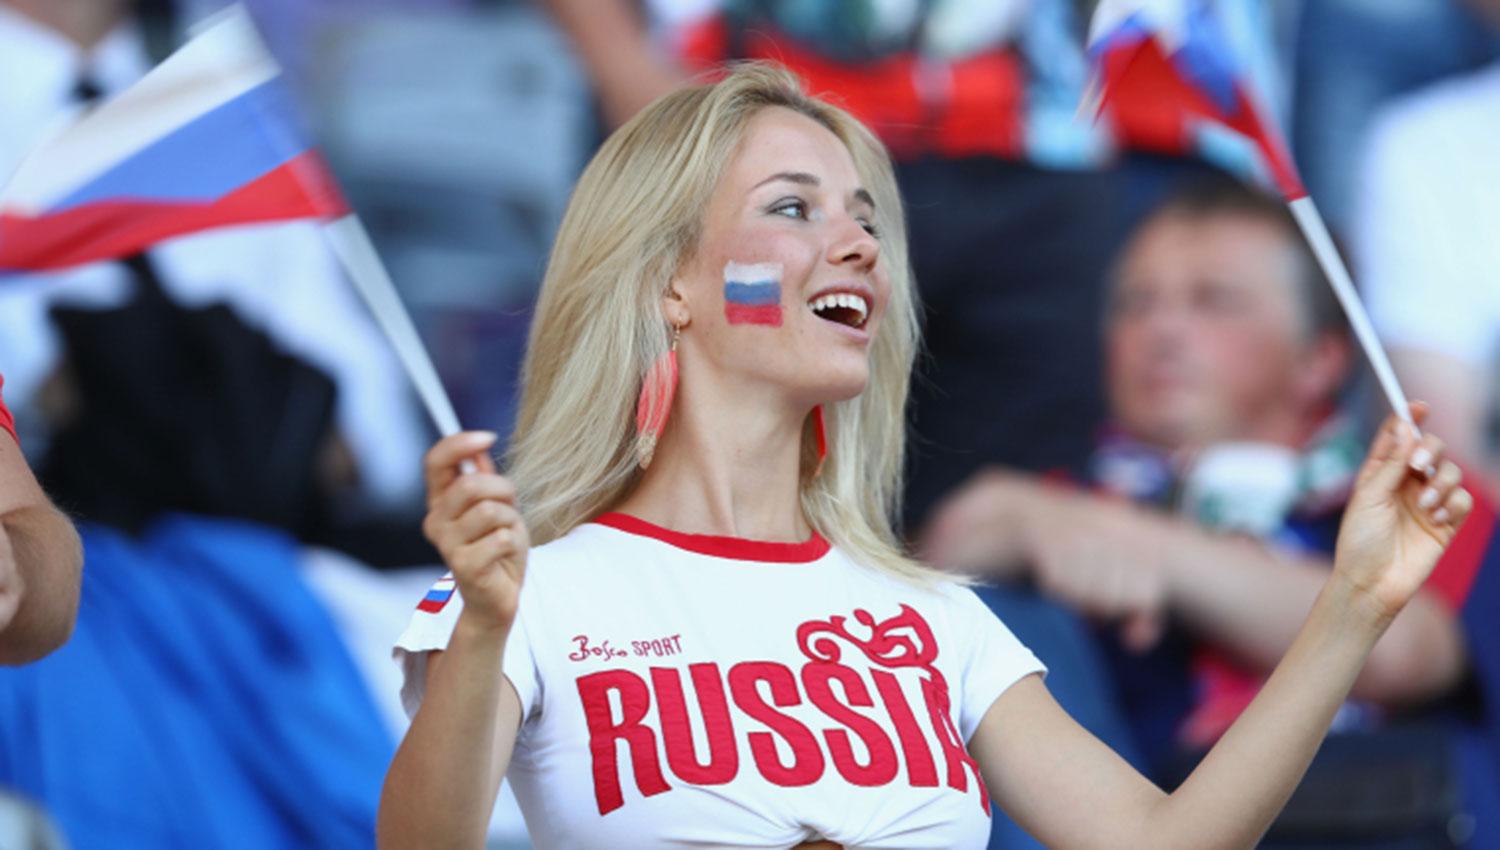 Las Mujeres Rusas En El Mundial De Objeto Turístico A Sublevadas